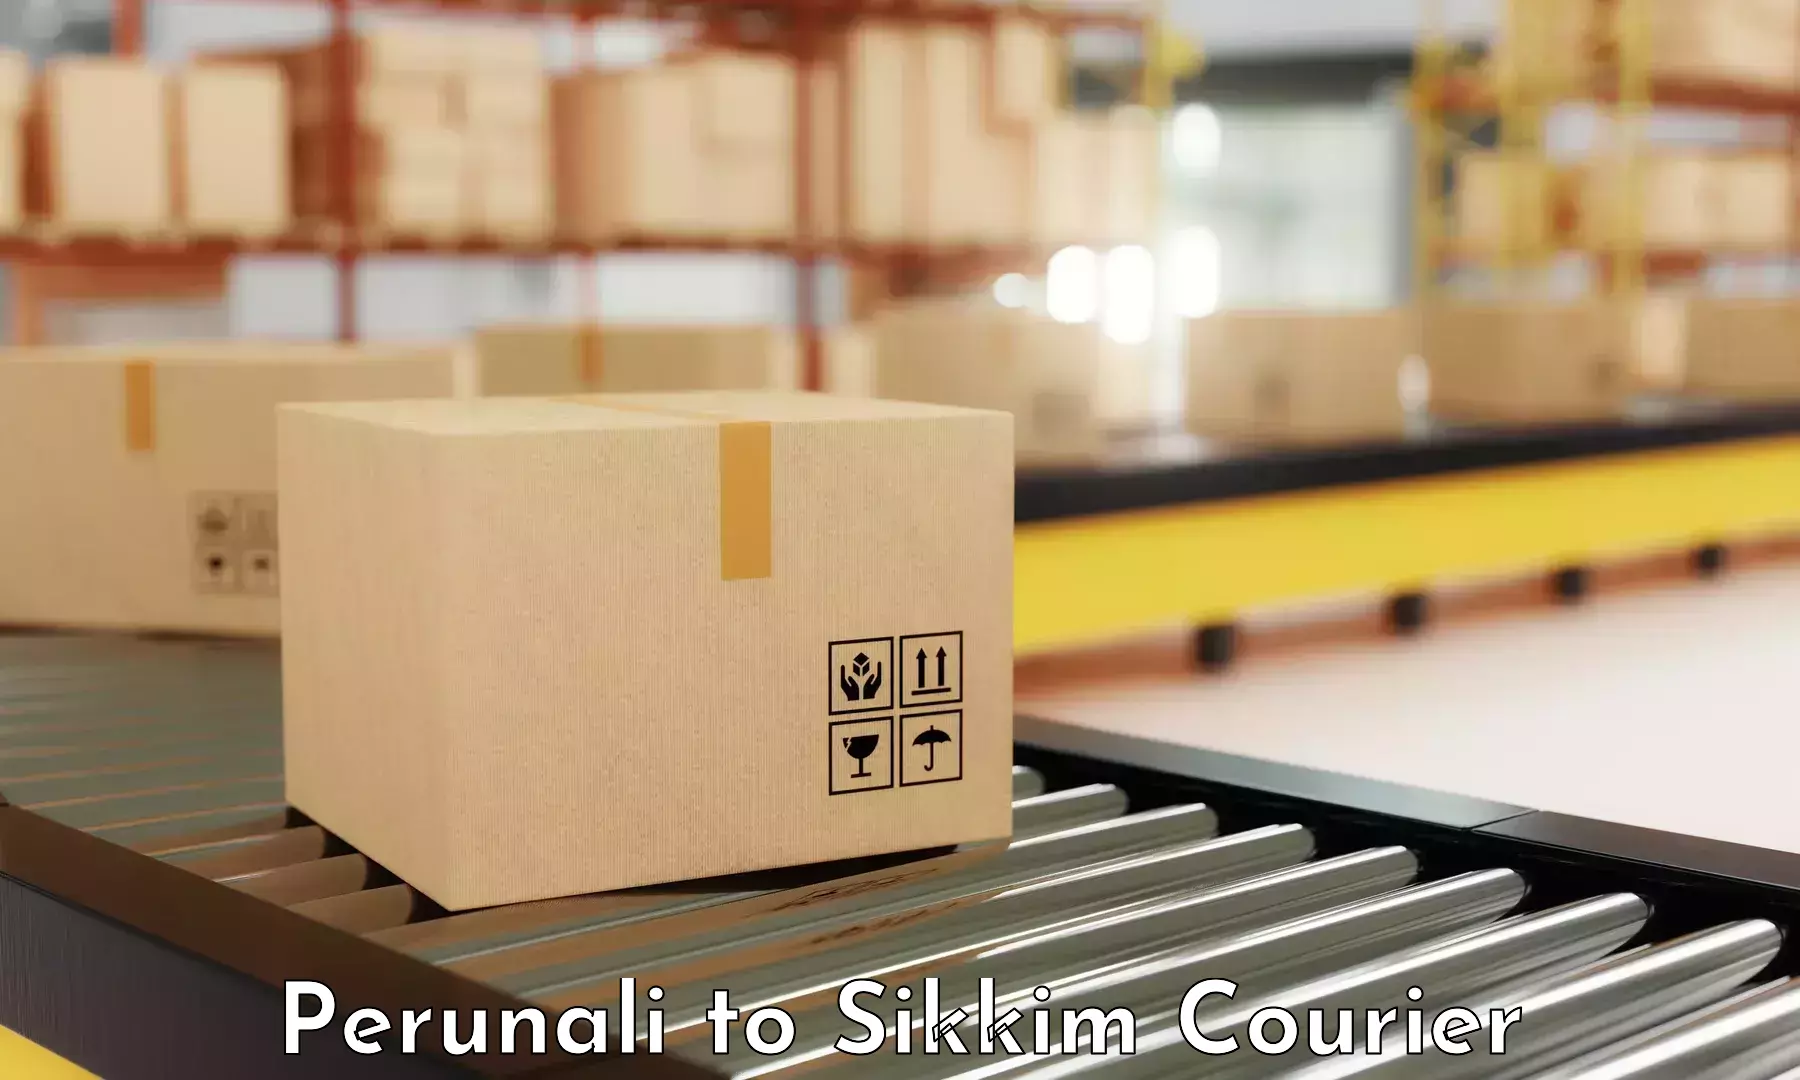 High-speed parcel service in Perunali to West Sikkim